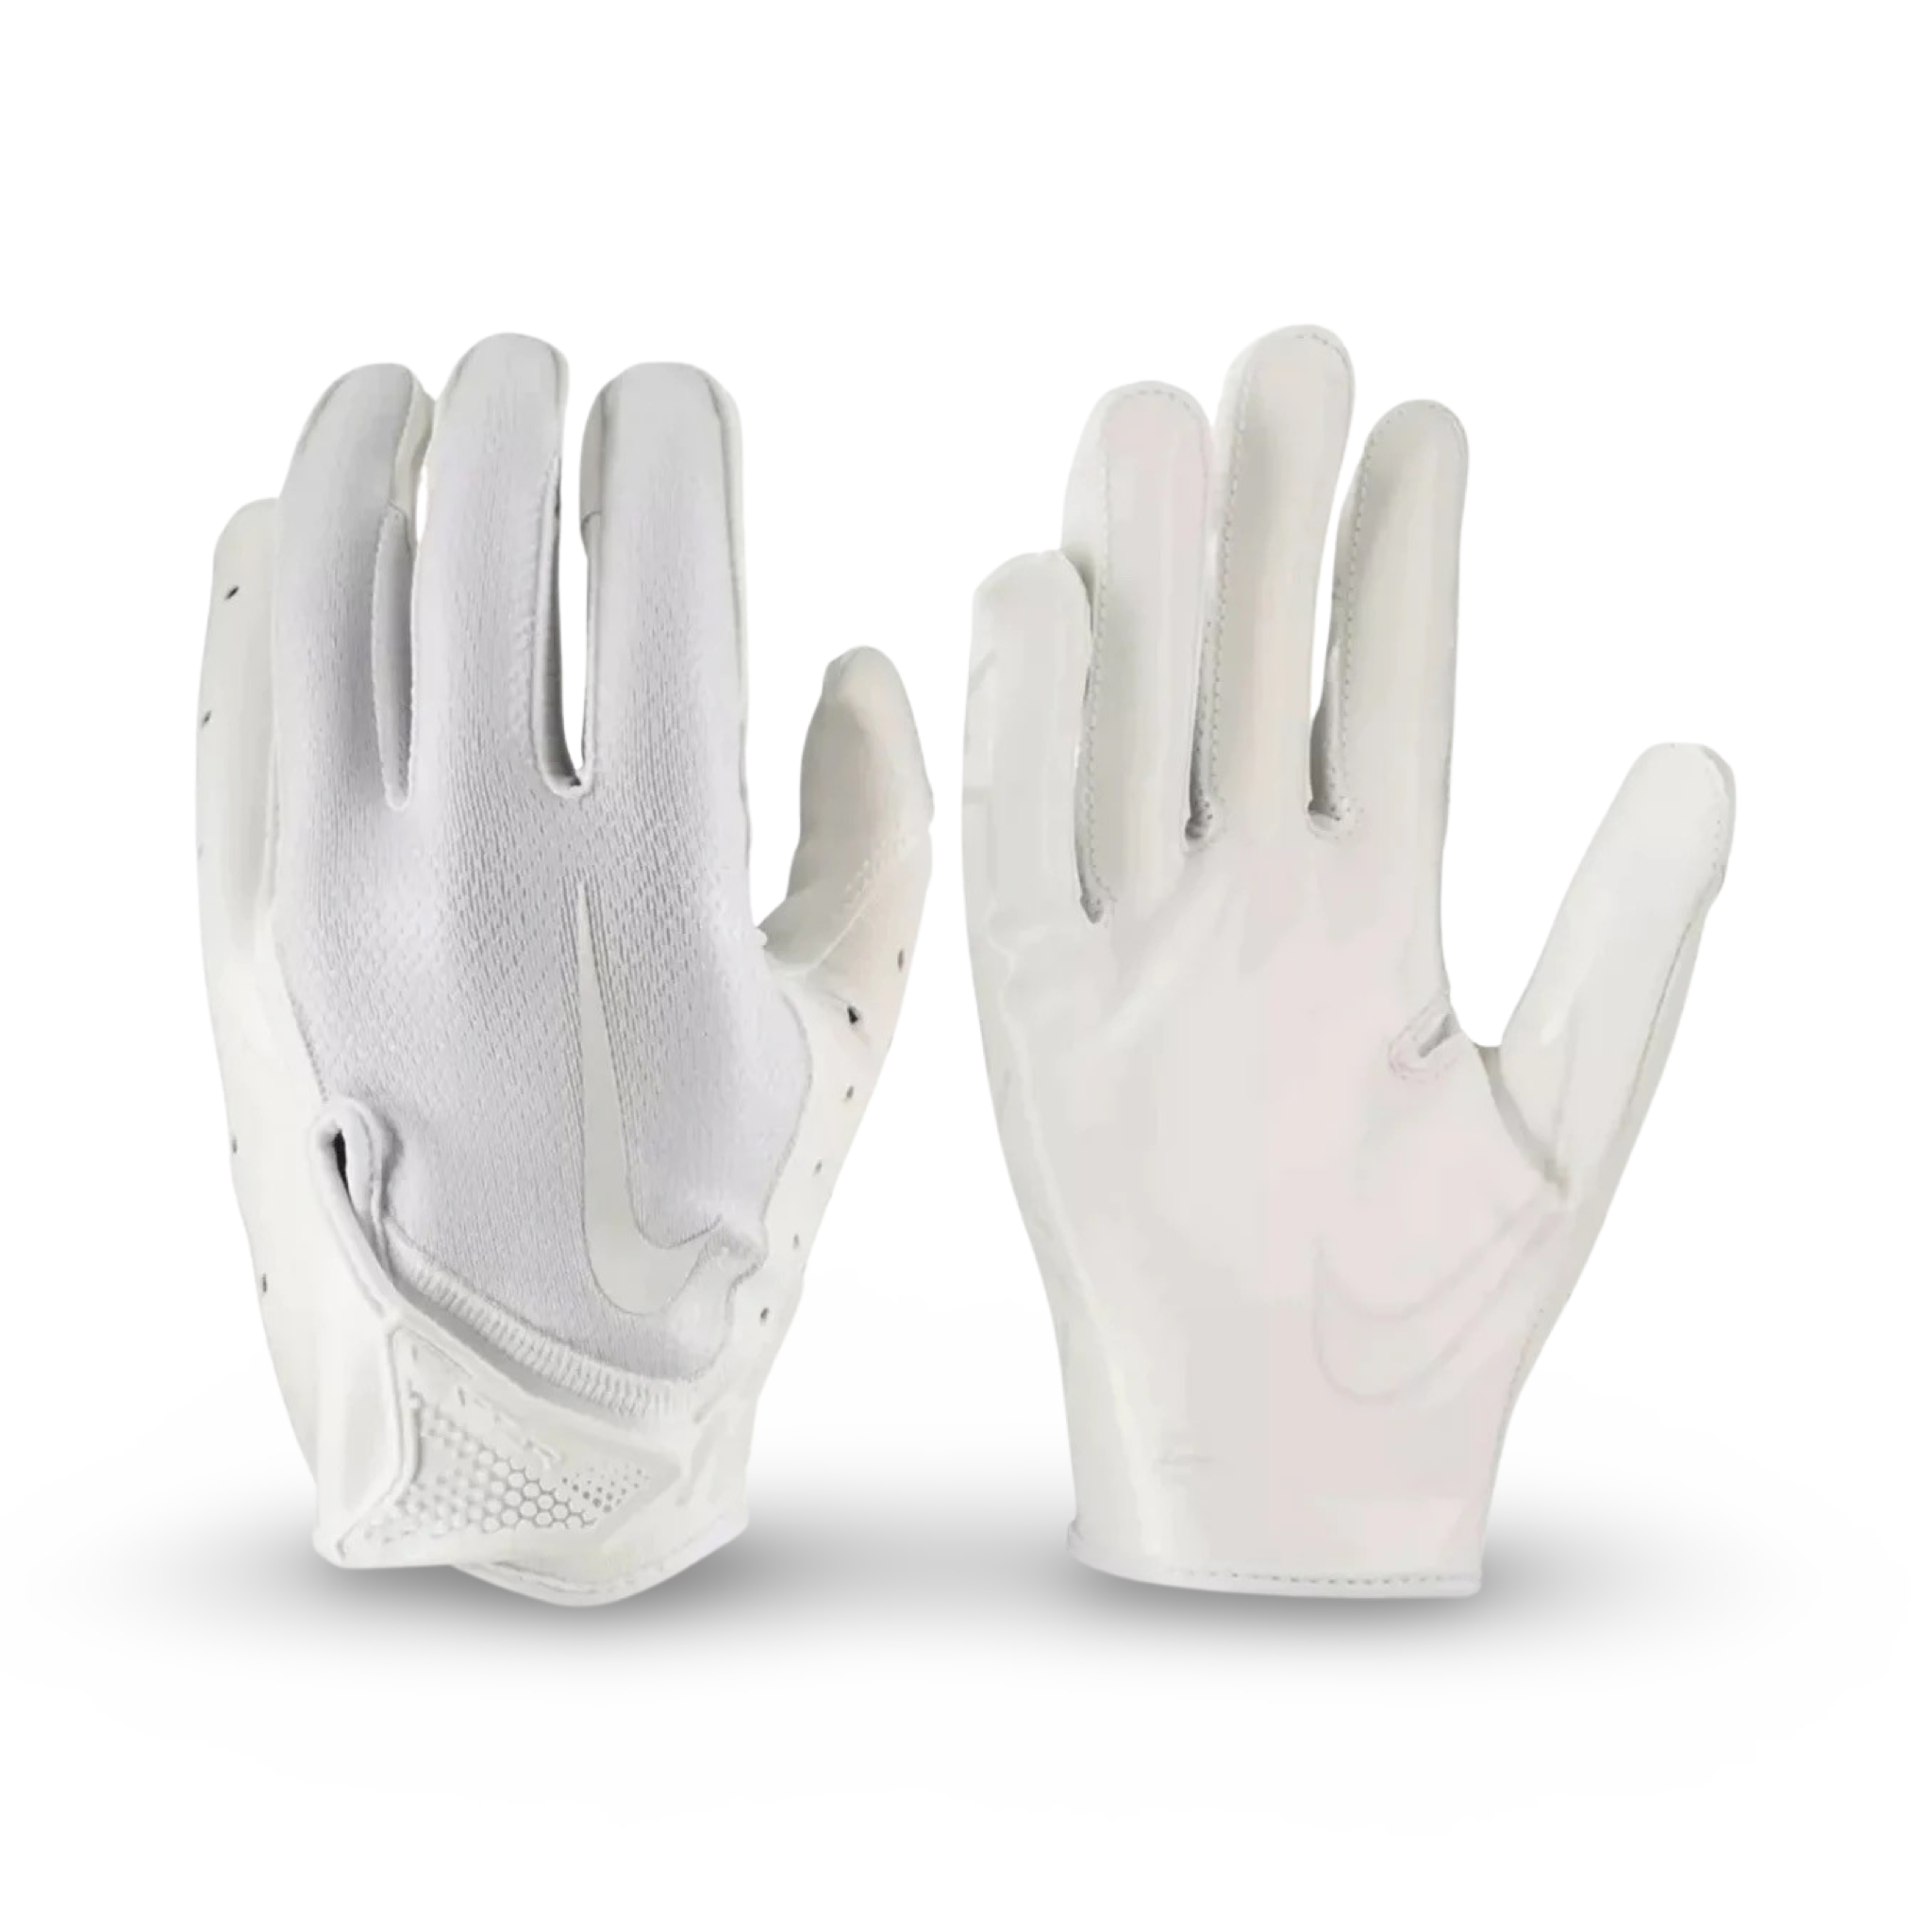 Nike Men's Vapor Jet 7.0 Football Gloves - All white